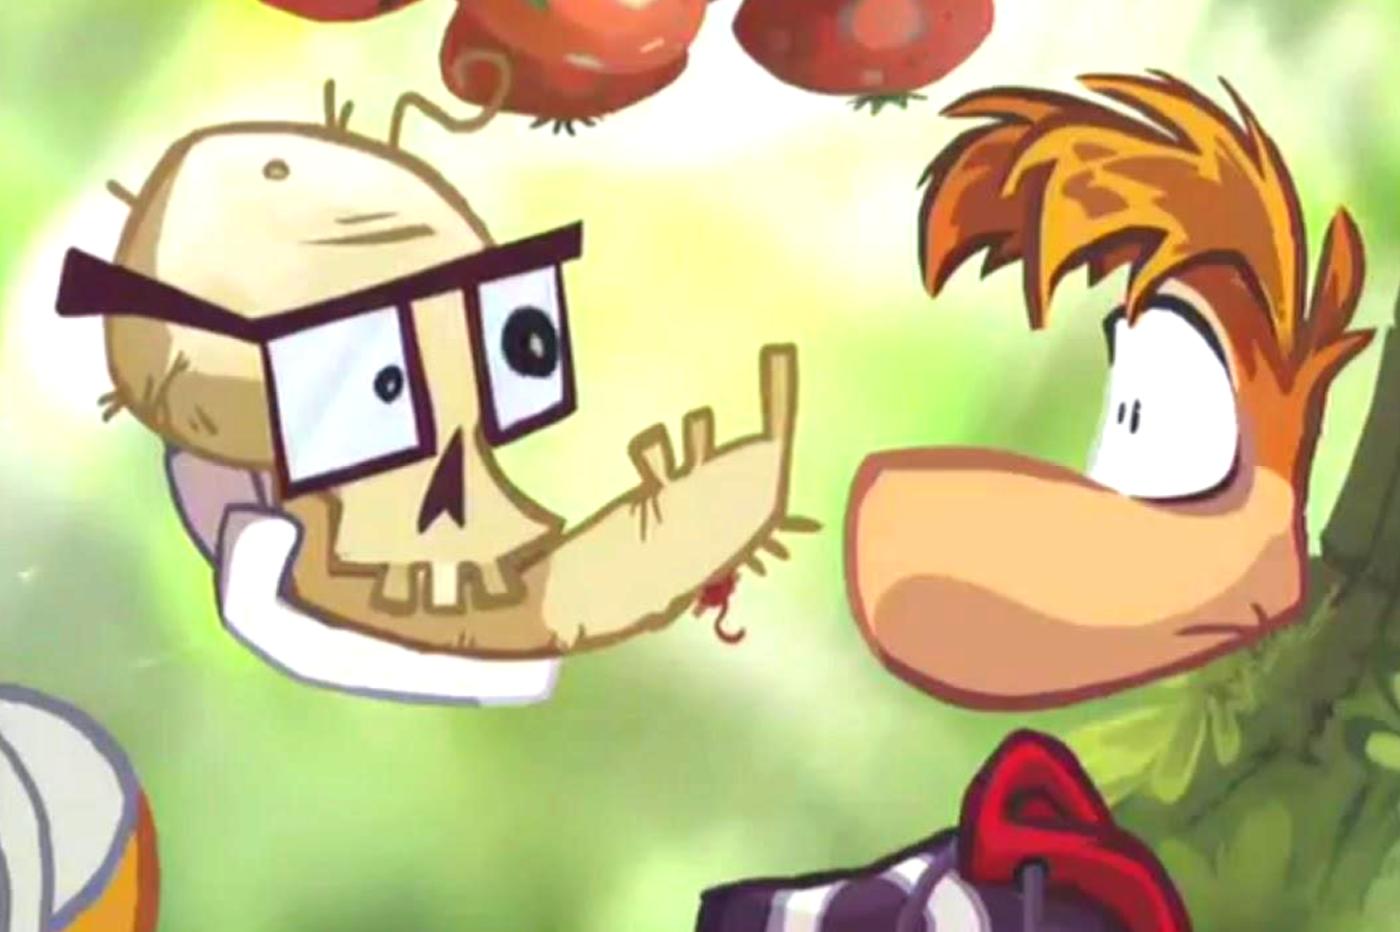 Capture d'écran de Rayman Origins avec Rayman tenant un crâne à lunettes dans sa main